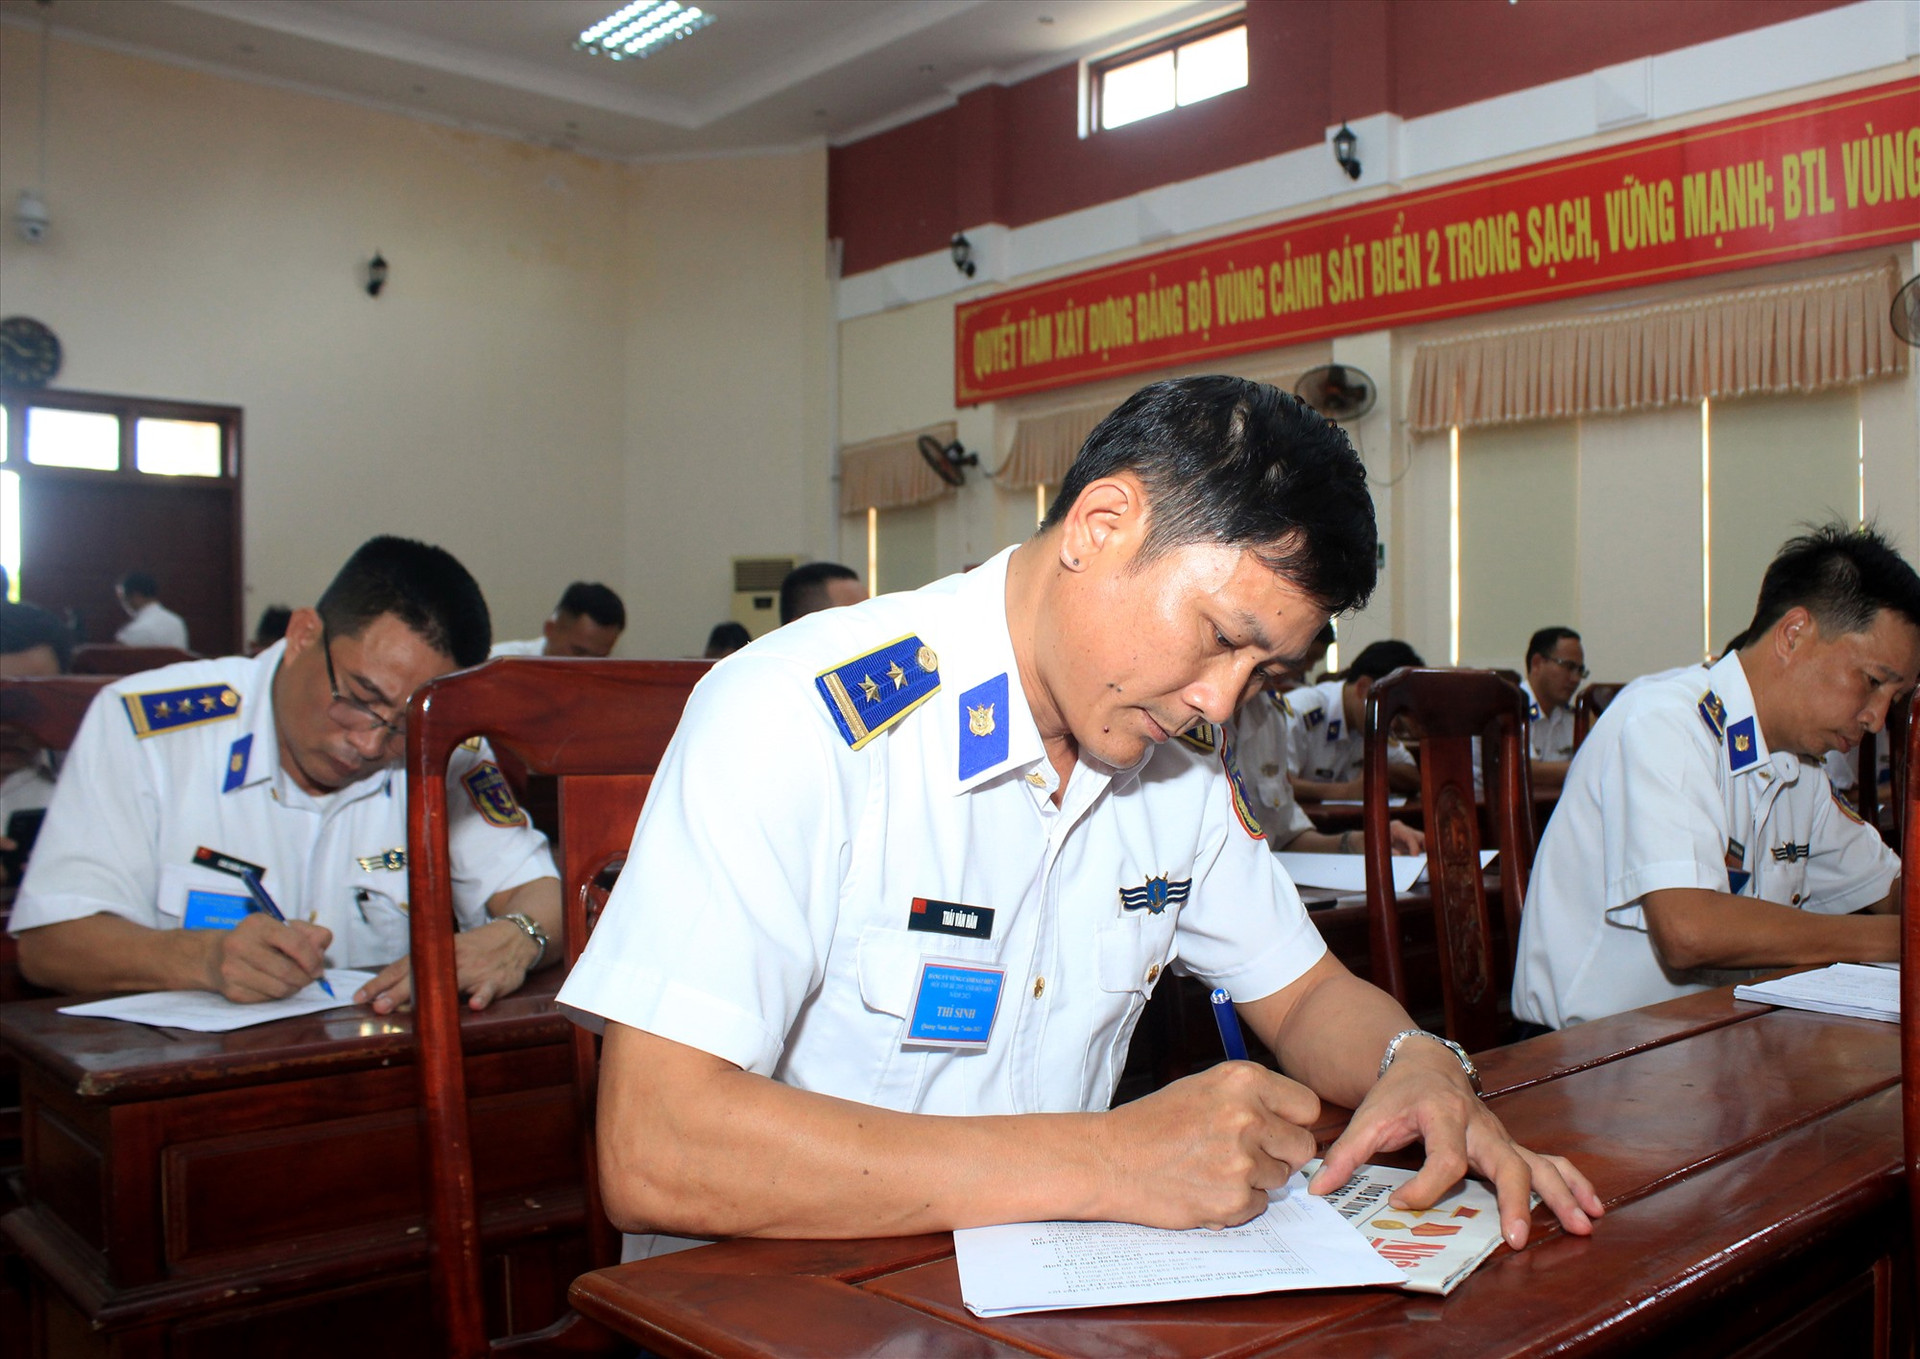 Tham dự hội thi có 24 thí sinh là Bí thư các chi bộ trực thuộc Bộ Tư lệnh Vùng Cảnh sát biển 2. Ảnh: T.C